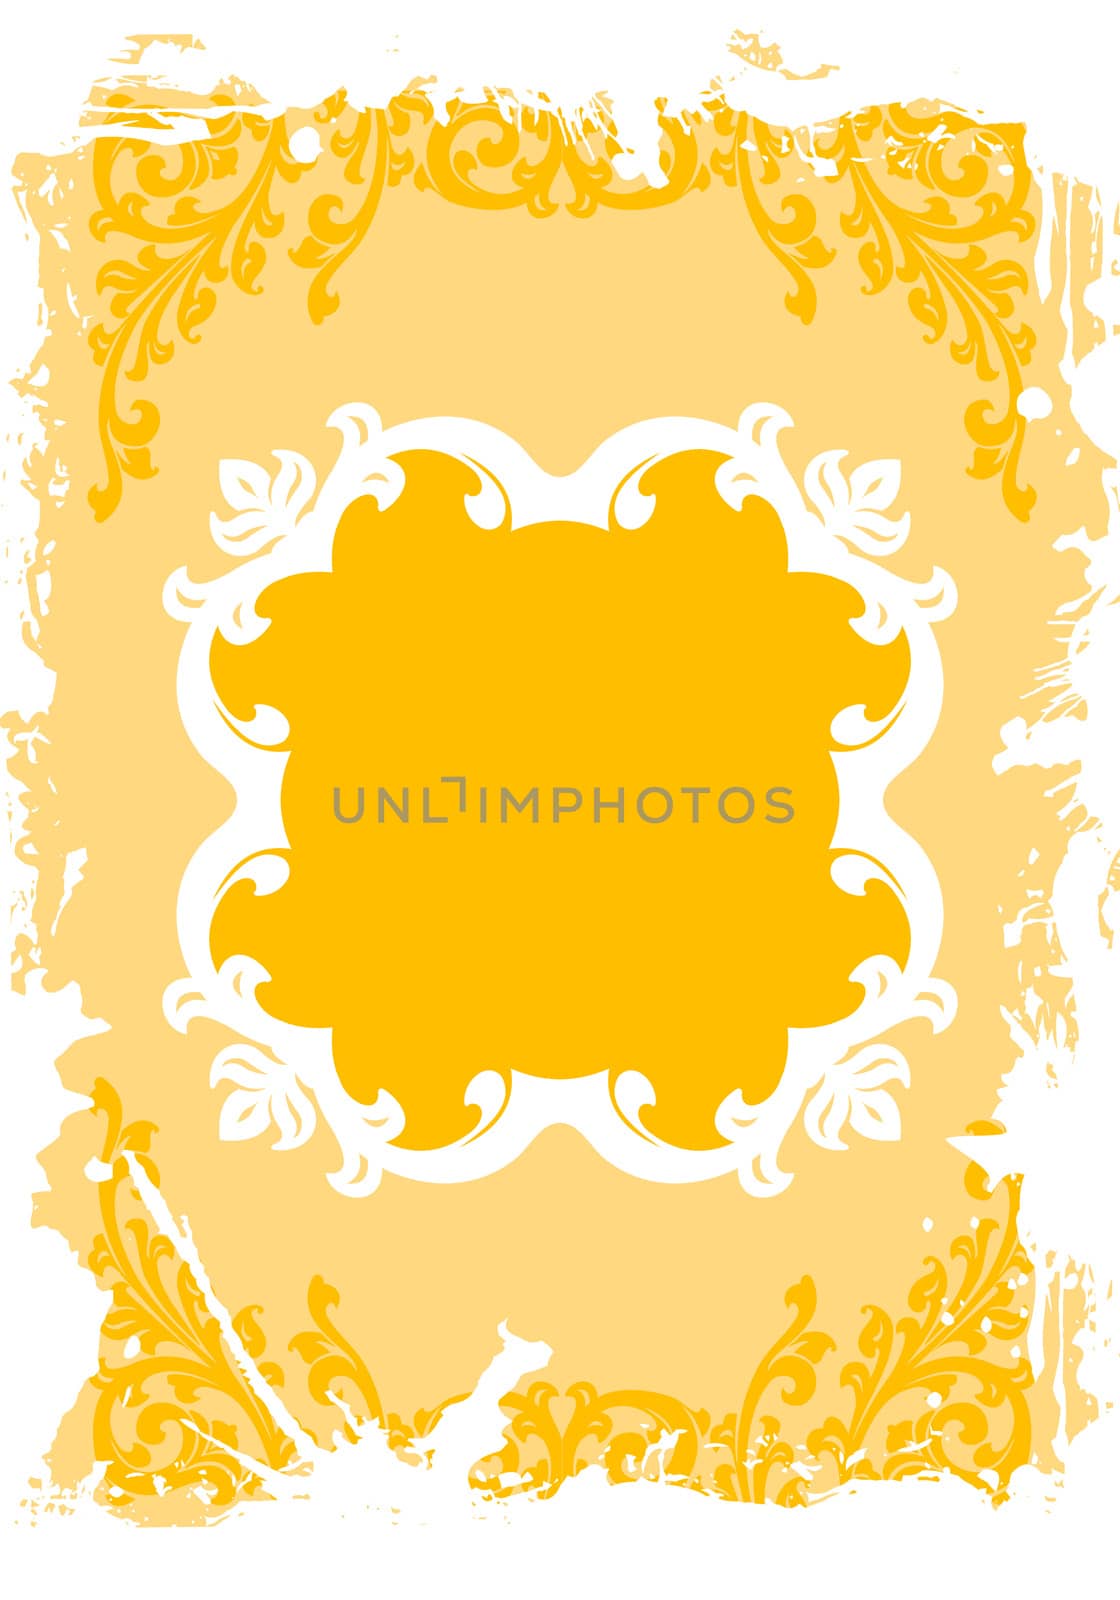 Abstract Spring Grunge Floral Frame Vector Illustration